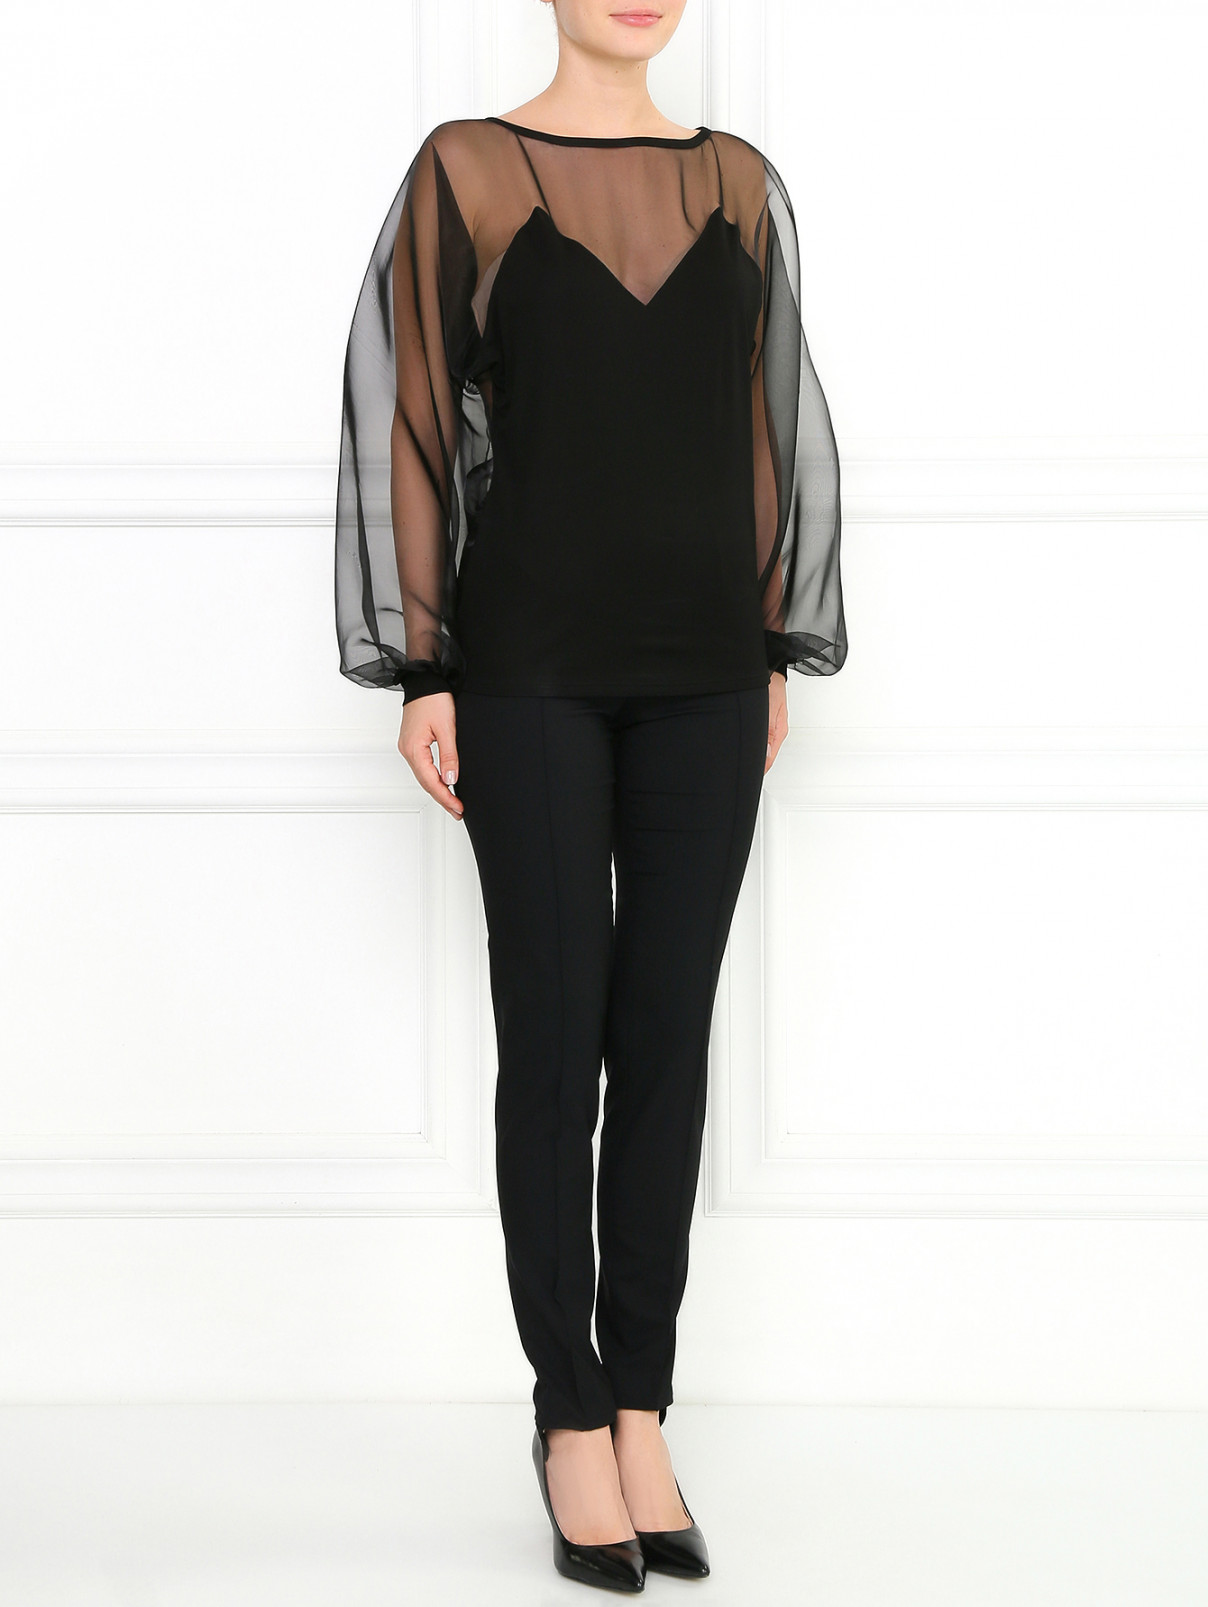 Блуза с объемными рукавами Jean Paul Gaultier  –  Модель Общий вид  – Цвет:  Черный